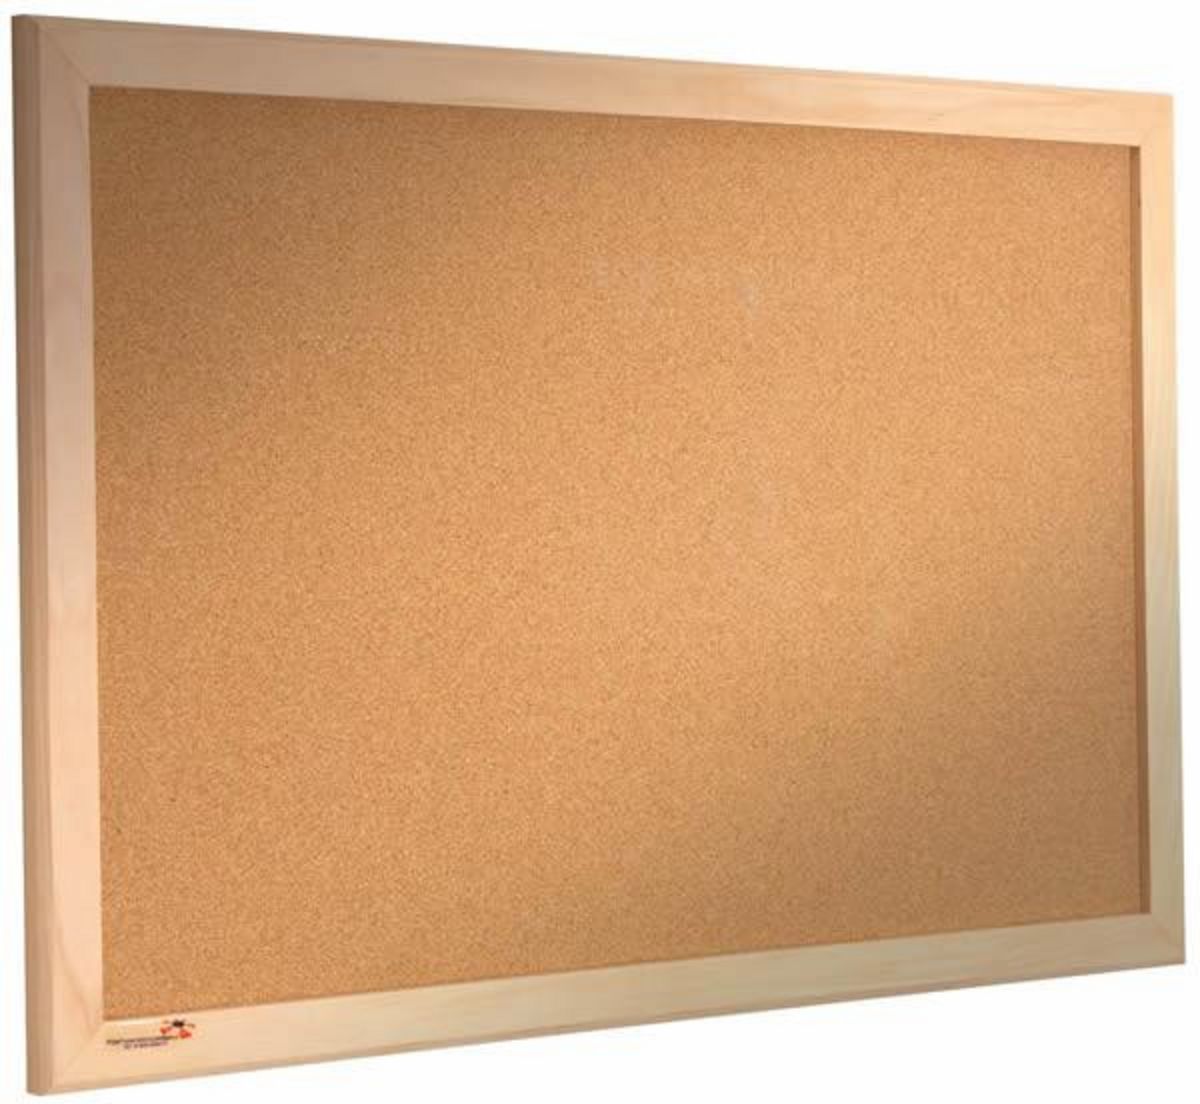 cork-noticeboard-wooden-frame_1024x1024.jpg